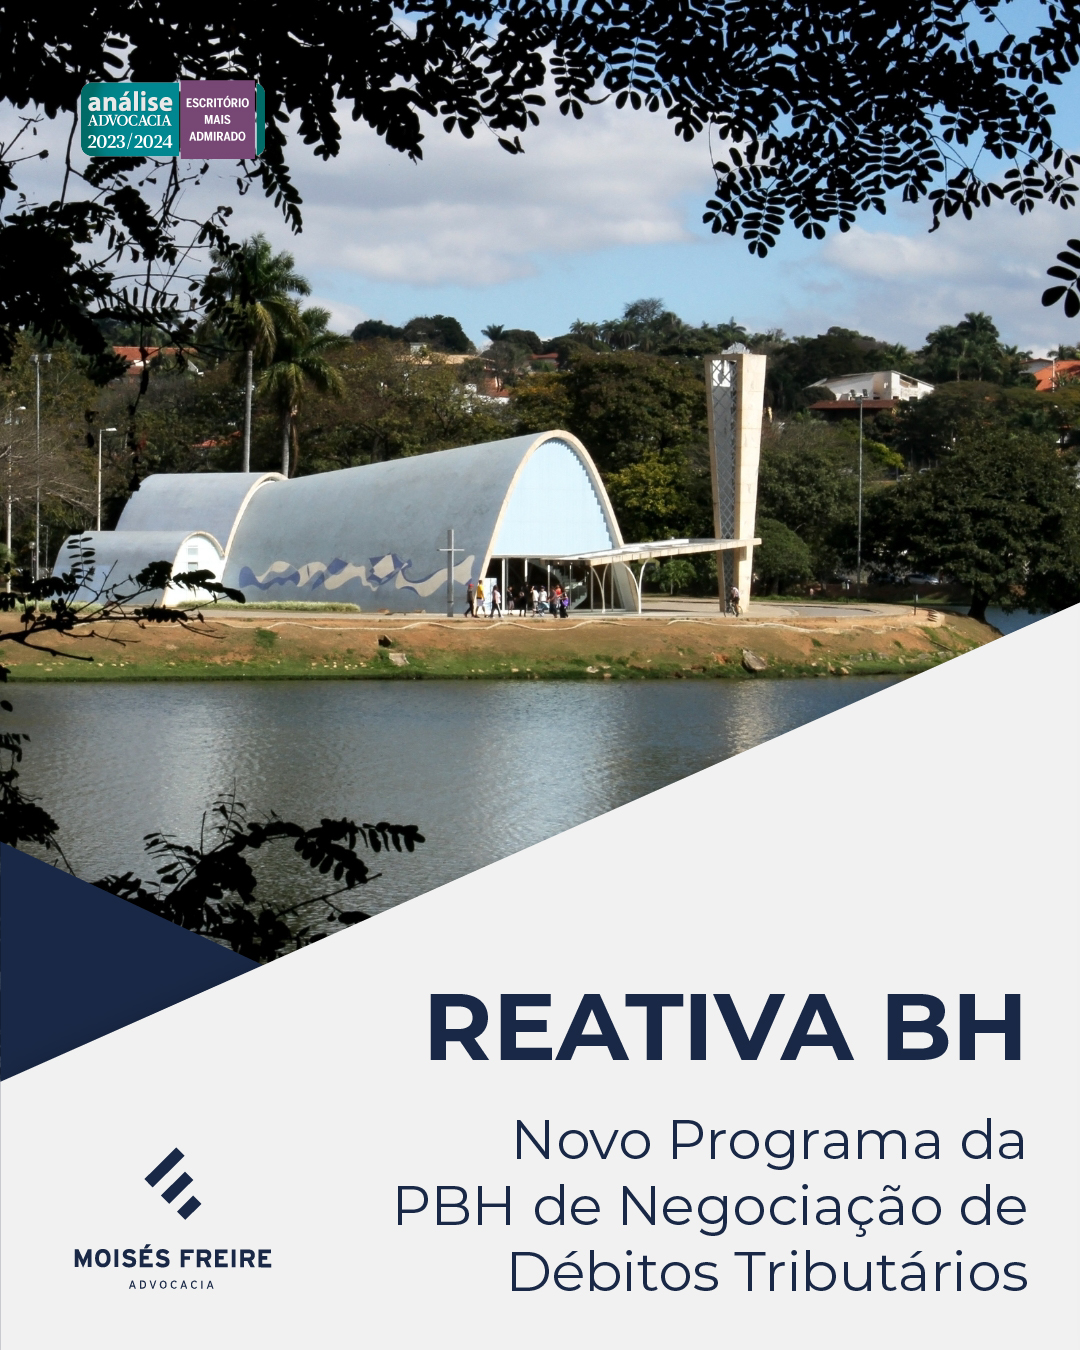 Novo Programa de Negociação de Débitos Tributários instituído pelo Município de Belo Horizonte possibilita a regularização fiscal de contribuintes com descontos sobre juros e multas e prazos acessíveis